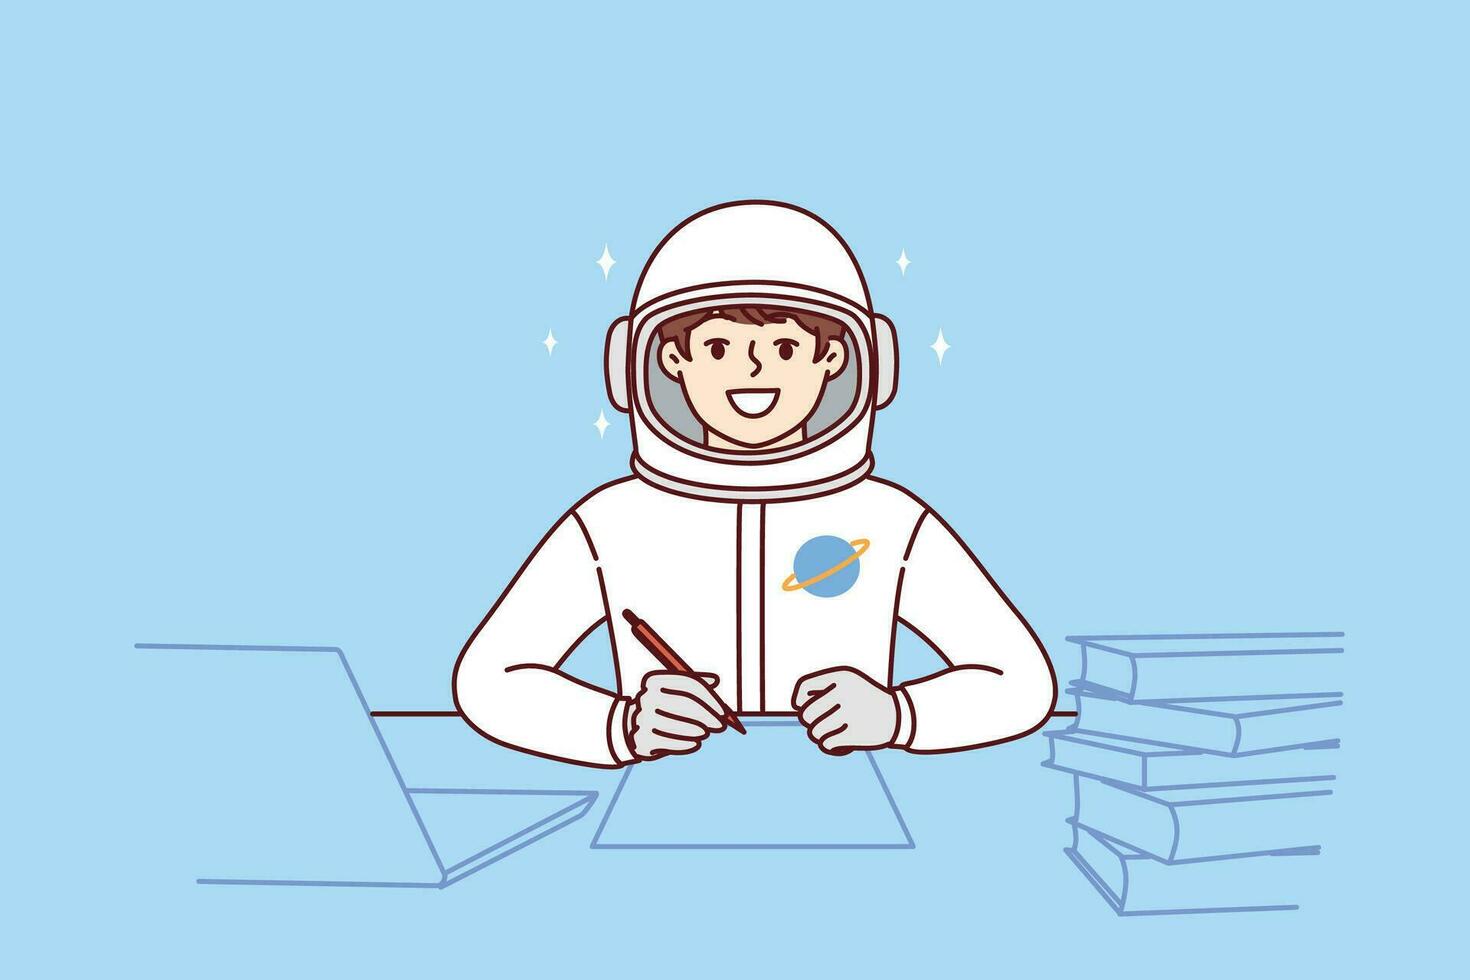 chico astronauta lo hace deberes sentado a mesa con libros, vestido en traje espacial para vuelo dentro espacio vector